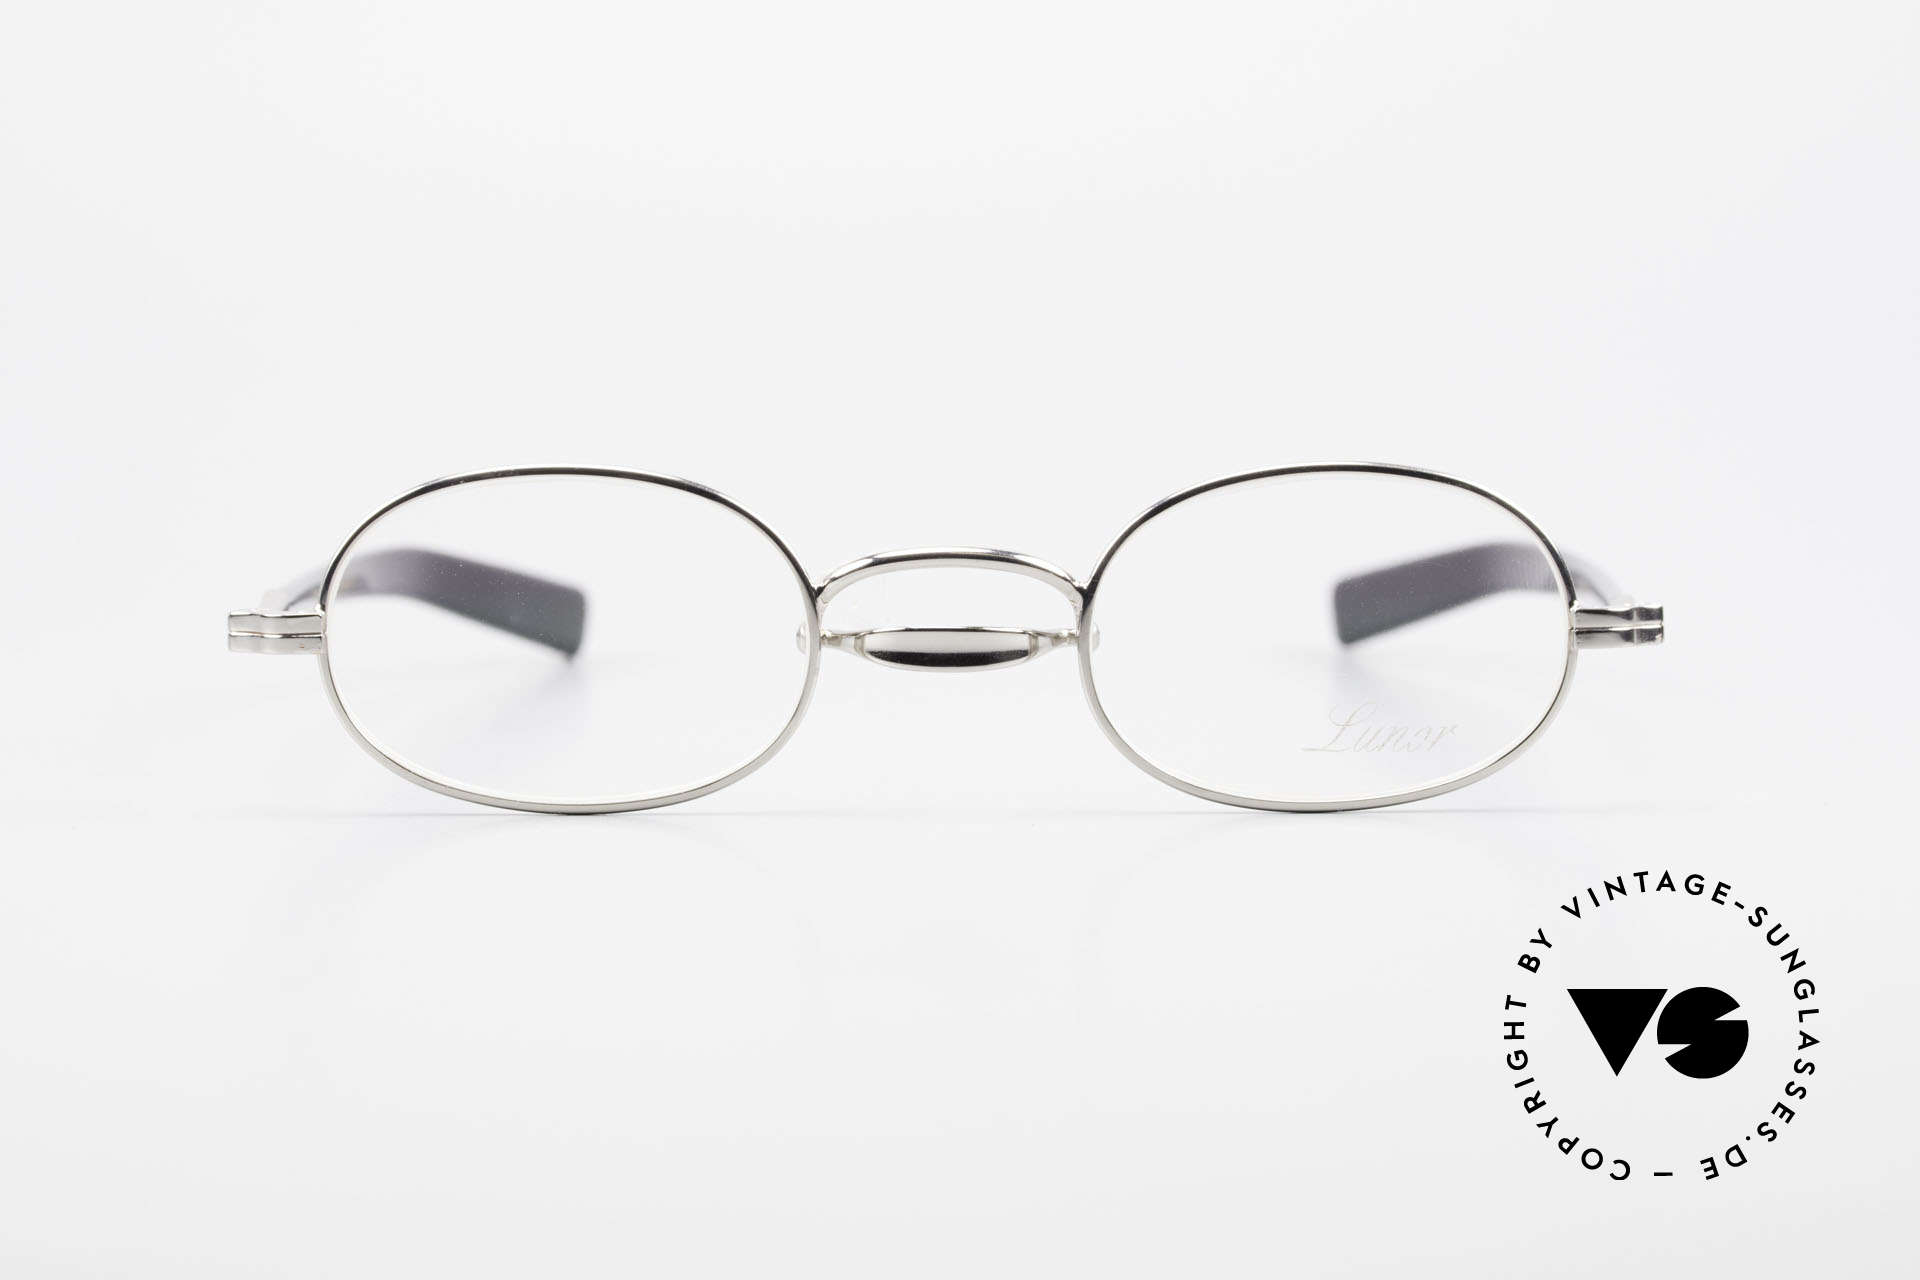 Lunor Swing A 36 Oval Vintage Brille Mit Schwenksteg, deutsches Traditionsunternehmen; made in Germany, Passend für Herren und Damen